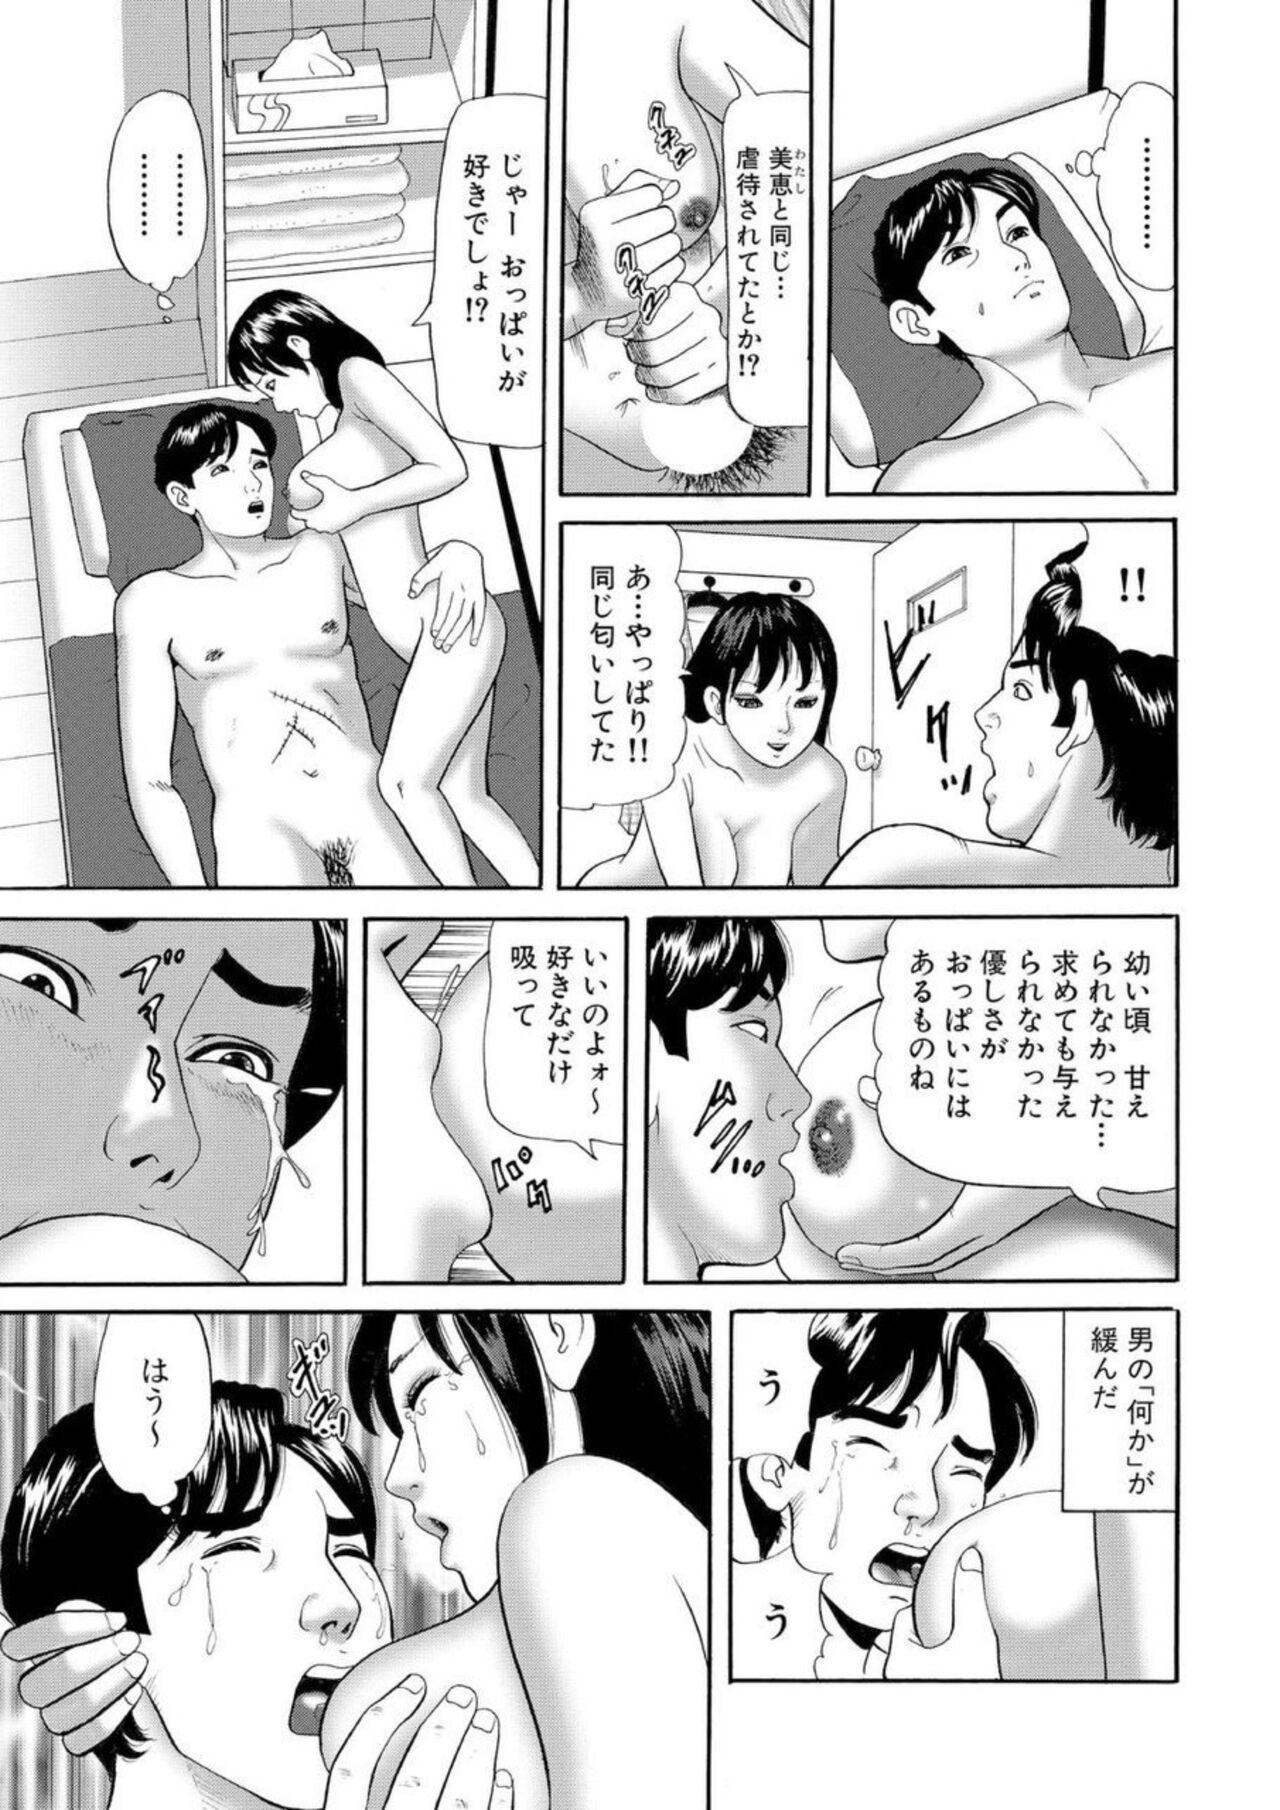 Boy Nyobon Jitsuroku Rape Saiban 1 Cheating - Page 8